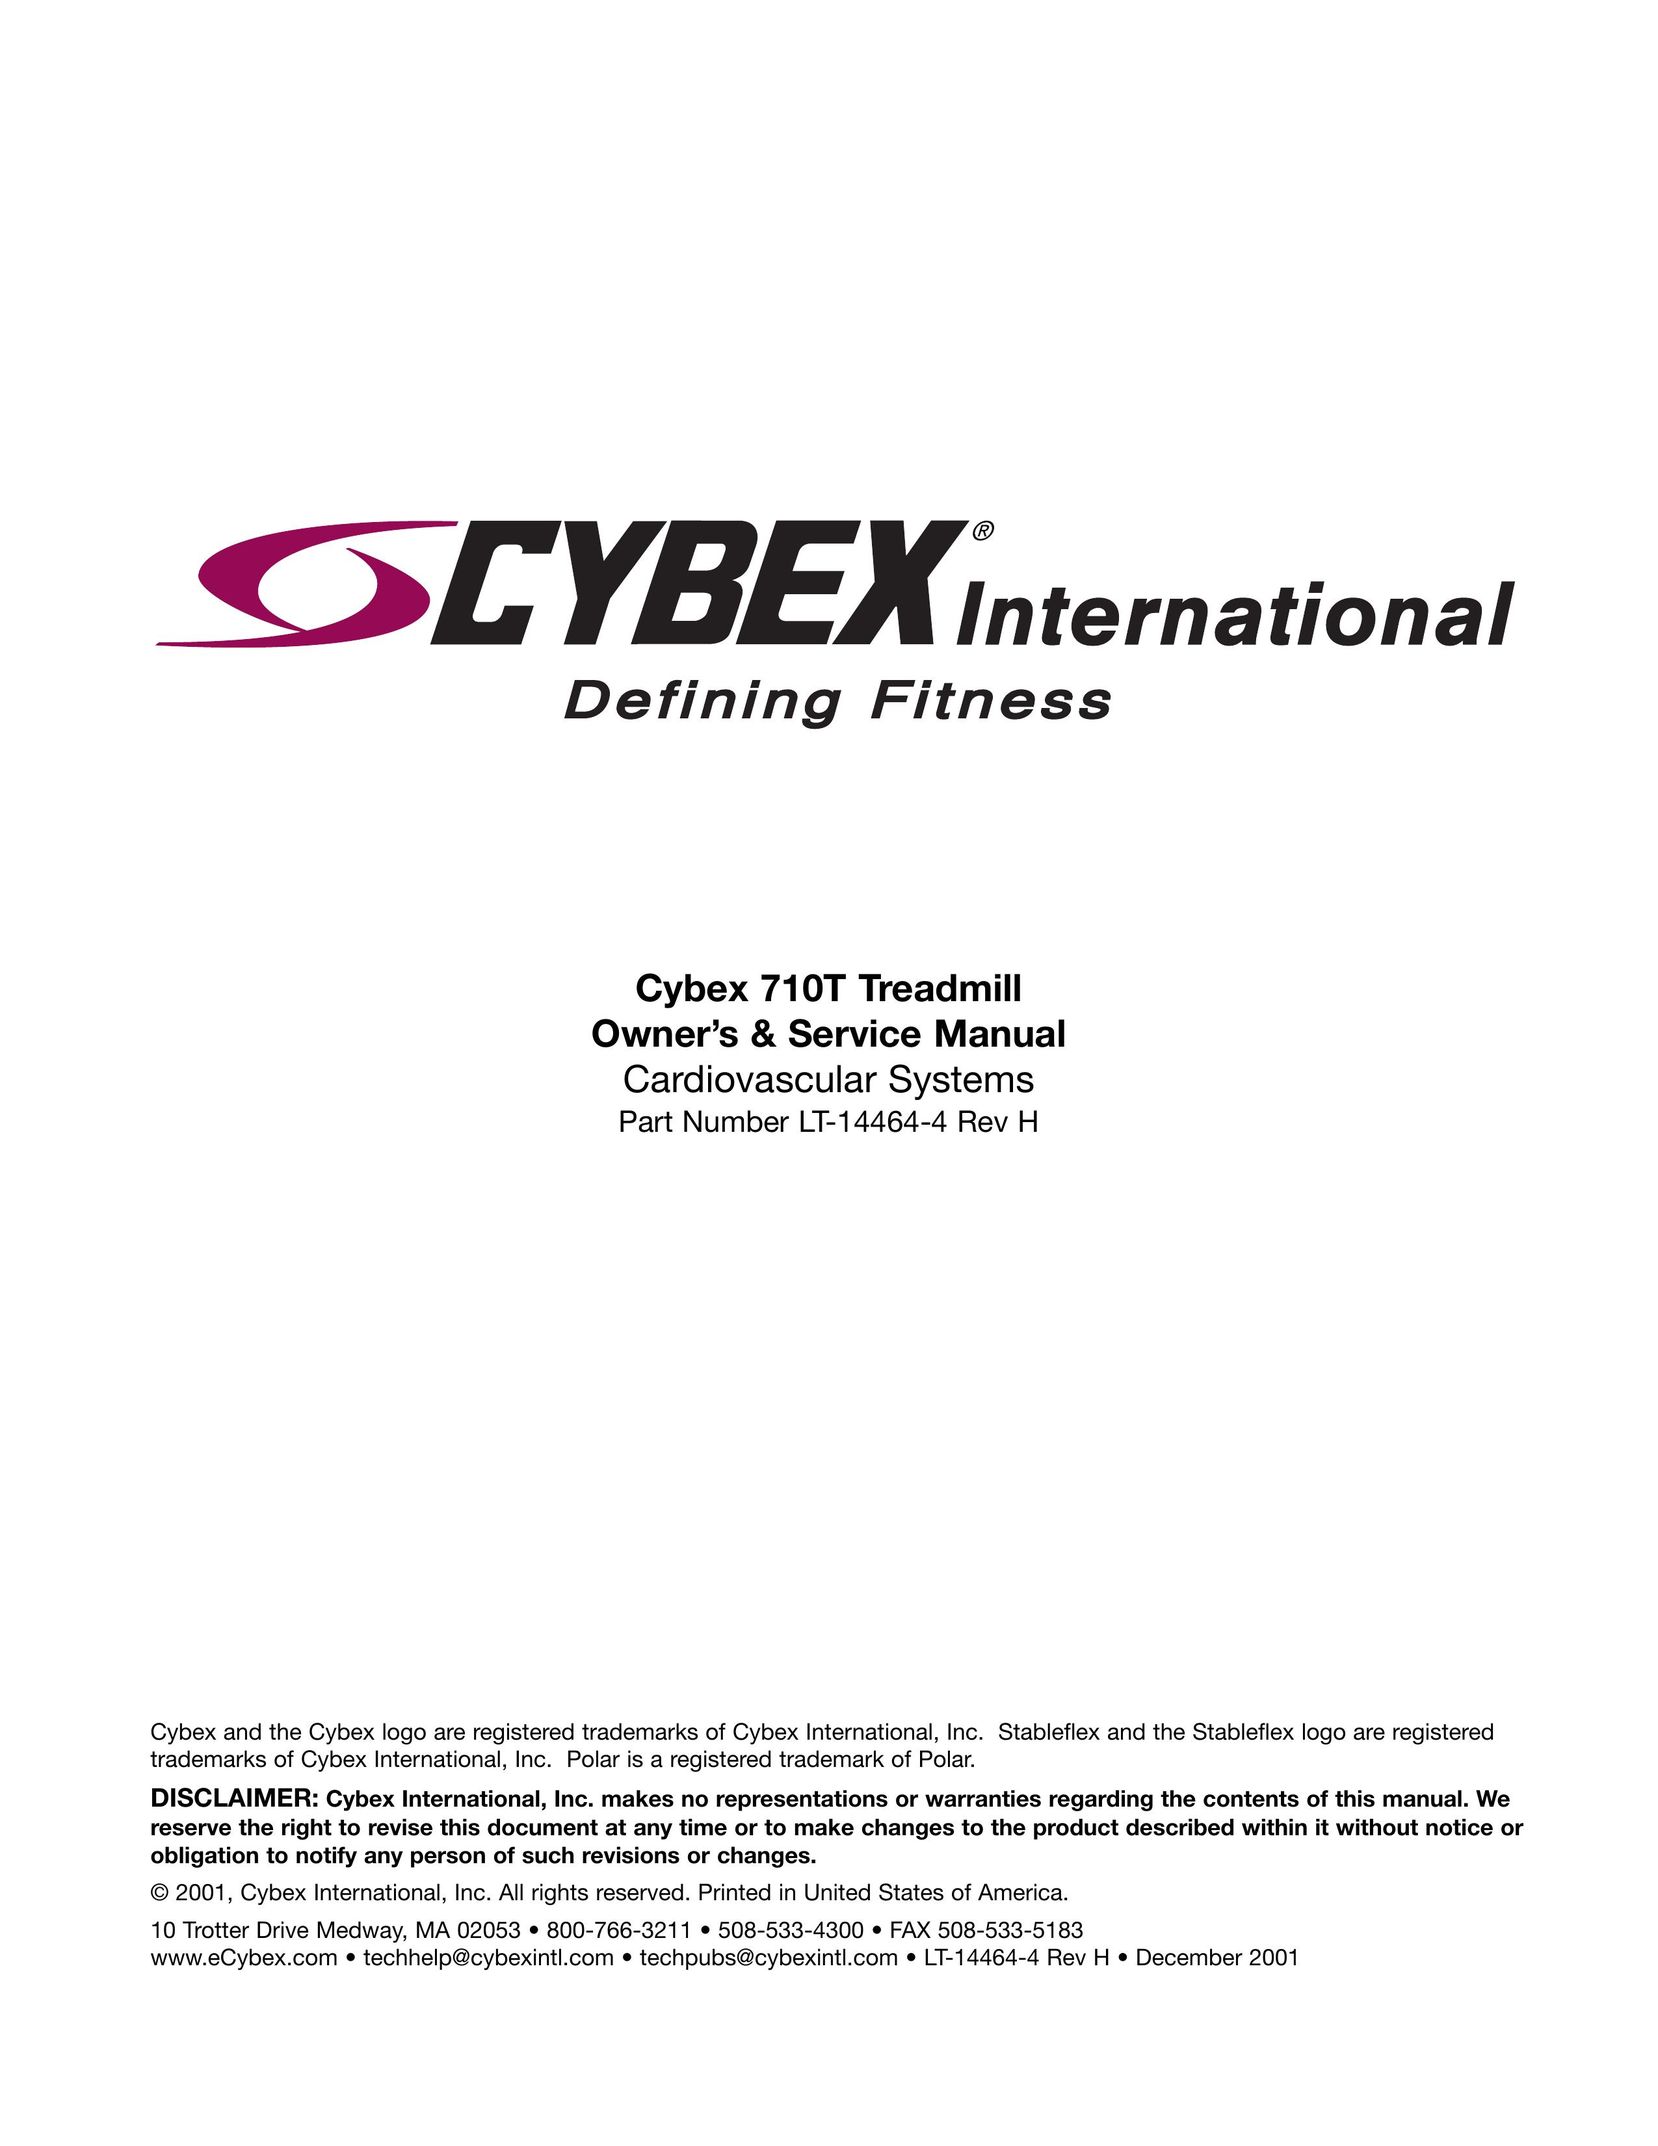 Cybex International LT-14464-4 Rev H Treadmill User Manual